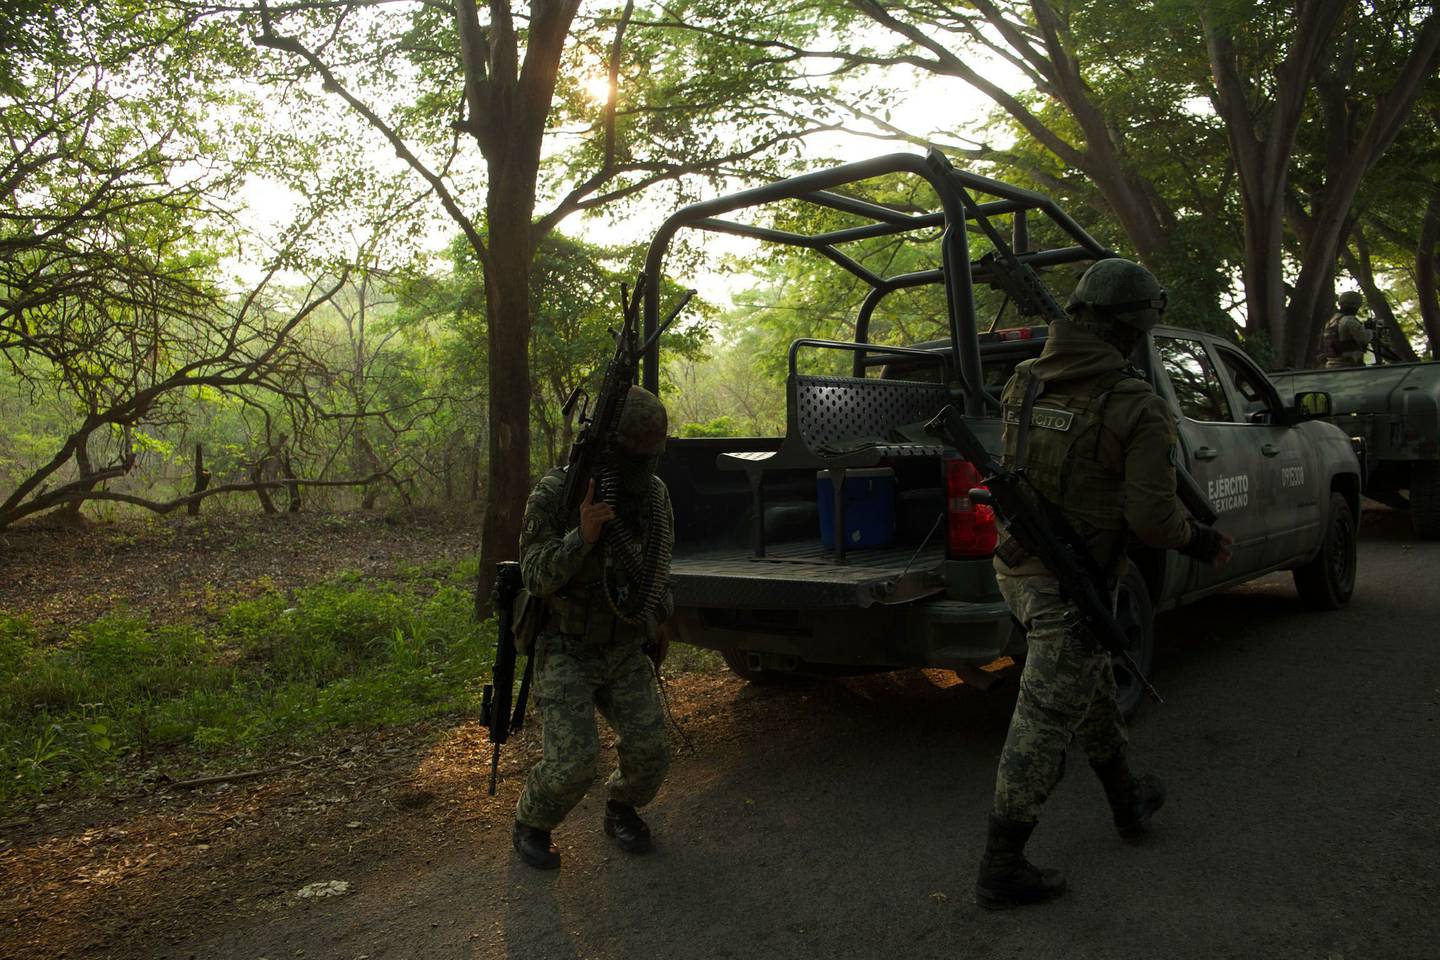 FRONTERA COMALAPA, CHIAPAS, 30MAYO2023.- Arrancó el Despliegue de Fuerza de Tareas dirigido por la SEDENA acompañado por la Guardia Nacional, Policía Estatal y Municipal rumbo a la región que ha sido azotada por la violencia entre grupos armados en incremento desde el año 2021 en comunidades fronterizas a Guatemala. El día 22 de Mayo del presente año estos grupos se han enfrentado sin descanso y con armamentos cada vez más altos, lo cual obligó a la población a desplazarse para salvaguardar sus vidas. Al entrar al municipio el convoy dirigido por el ejército nacional estos se encaminaron al ejido Joaquín Miguel Gutierrez, donde se encontraron con pobladores de la región y estos les impidieron el paso argumentando que el problema y la violencia está en la cabecera municipal y otros poblados. Después de un tiempo de diálogo sin acuerdos, el ejército empezó a avanzar a lo cual los pobladores respondieron con palos y piedras negando la entrada, elementos del ejército lanzaban bombas de gas lacrimógeno y las piedras de regresó para seguir con su incursión a la comunidad. 
FOTO: ISABEL MATEOS /CUARTOSCURO.COM